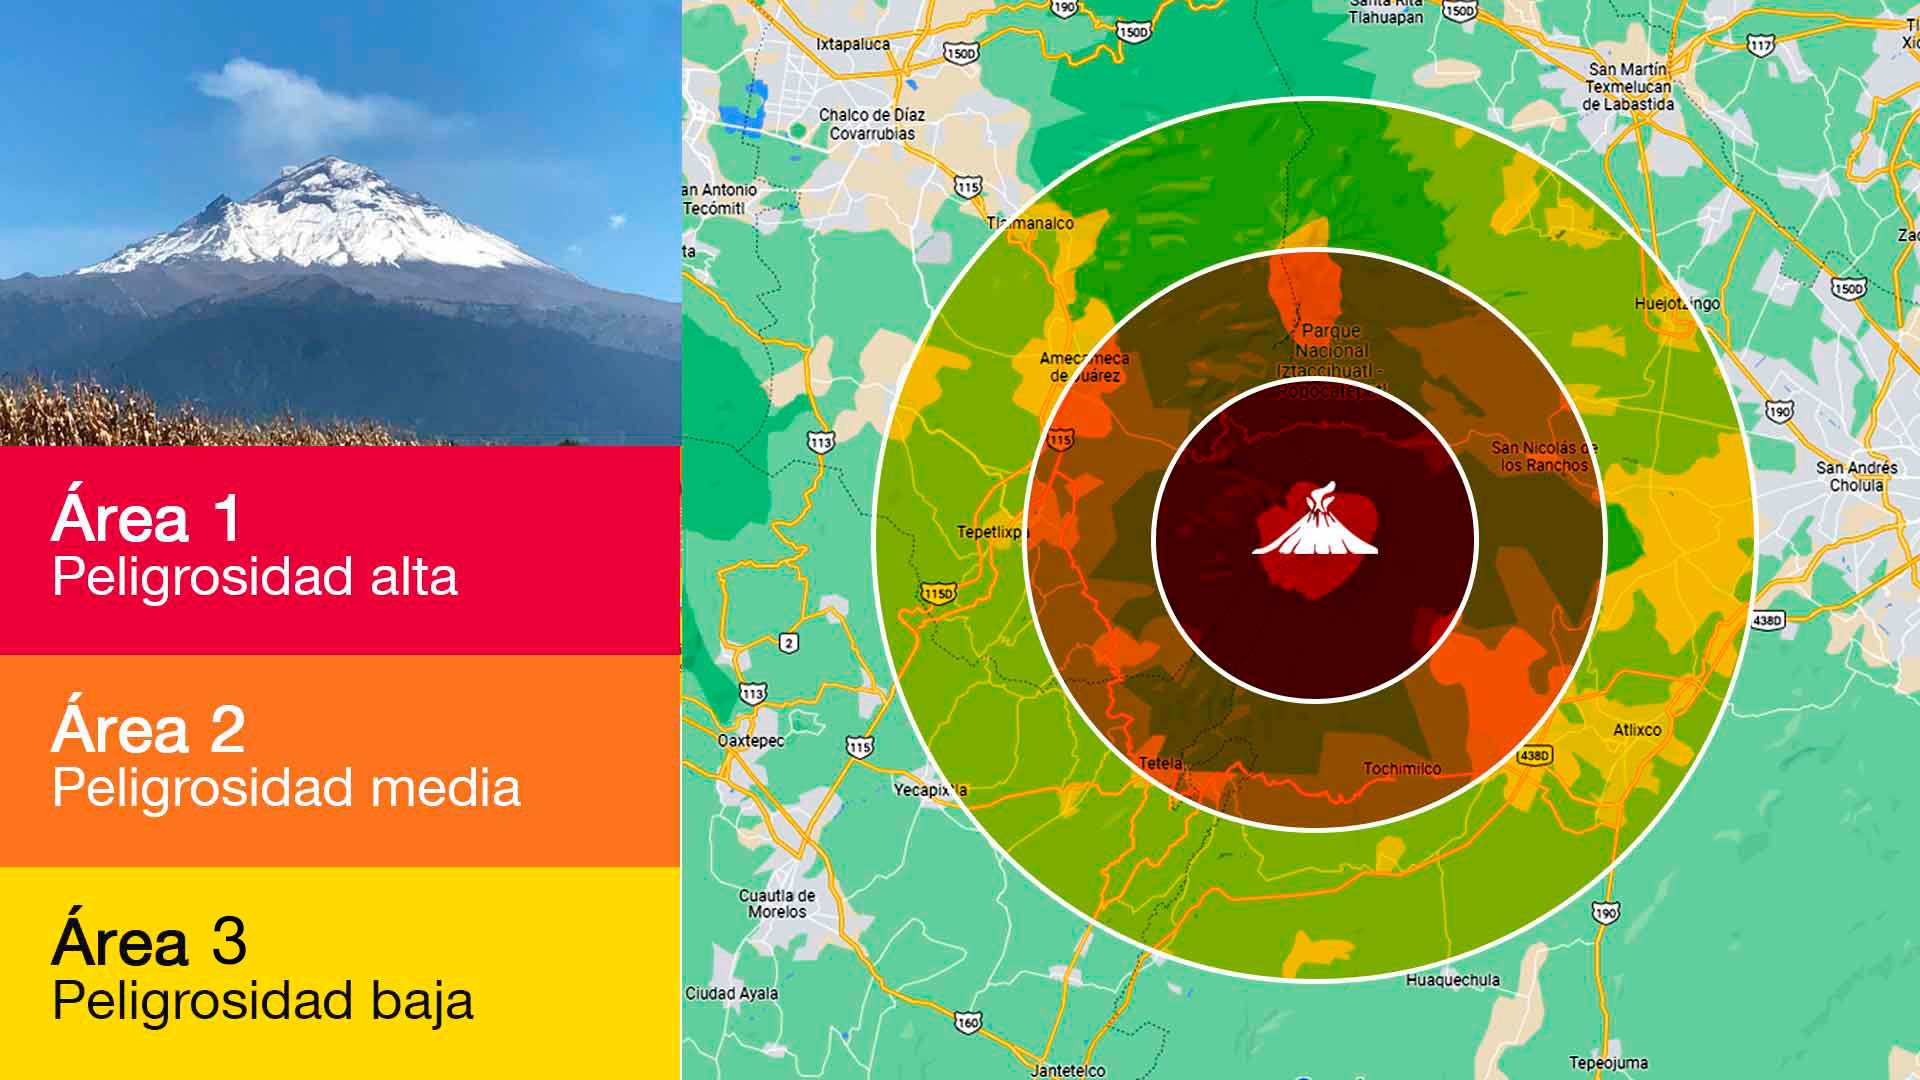 Popocatépetl lanza 67 exhalaciones en 24 hrs, según monitoreo